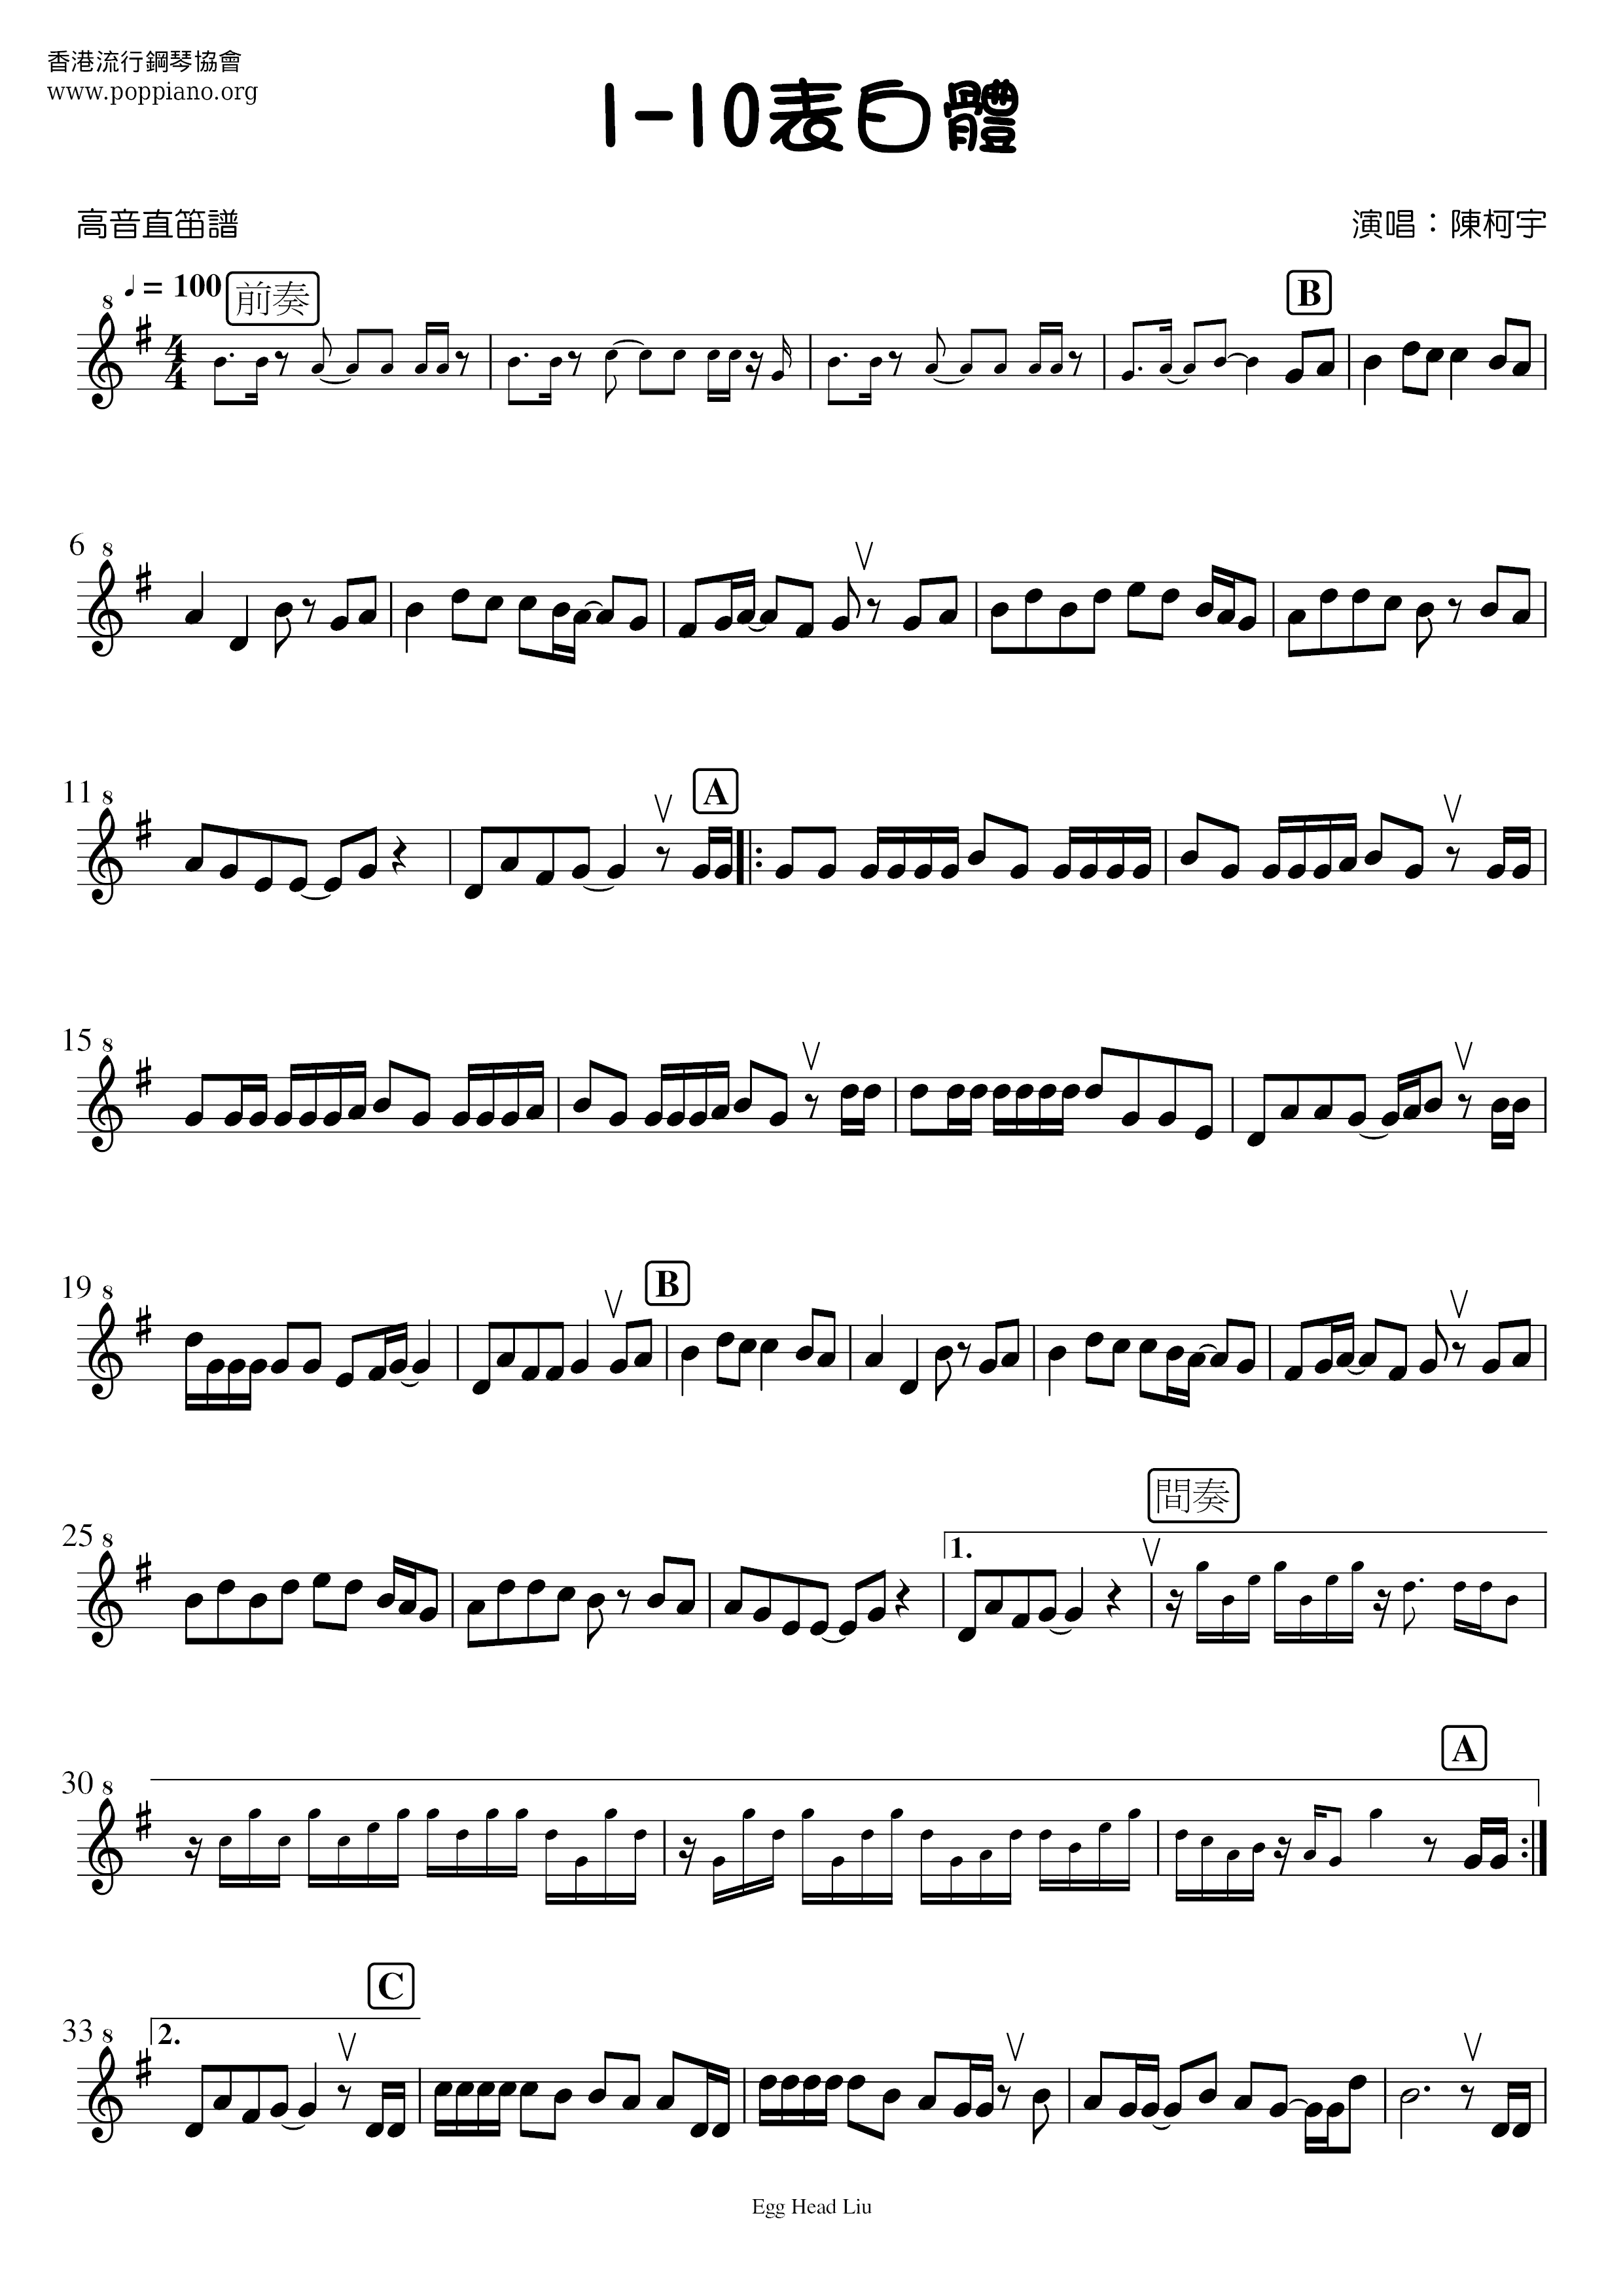 1-10表白體琴譜